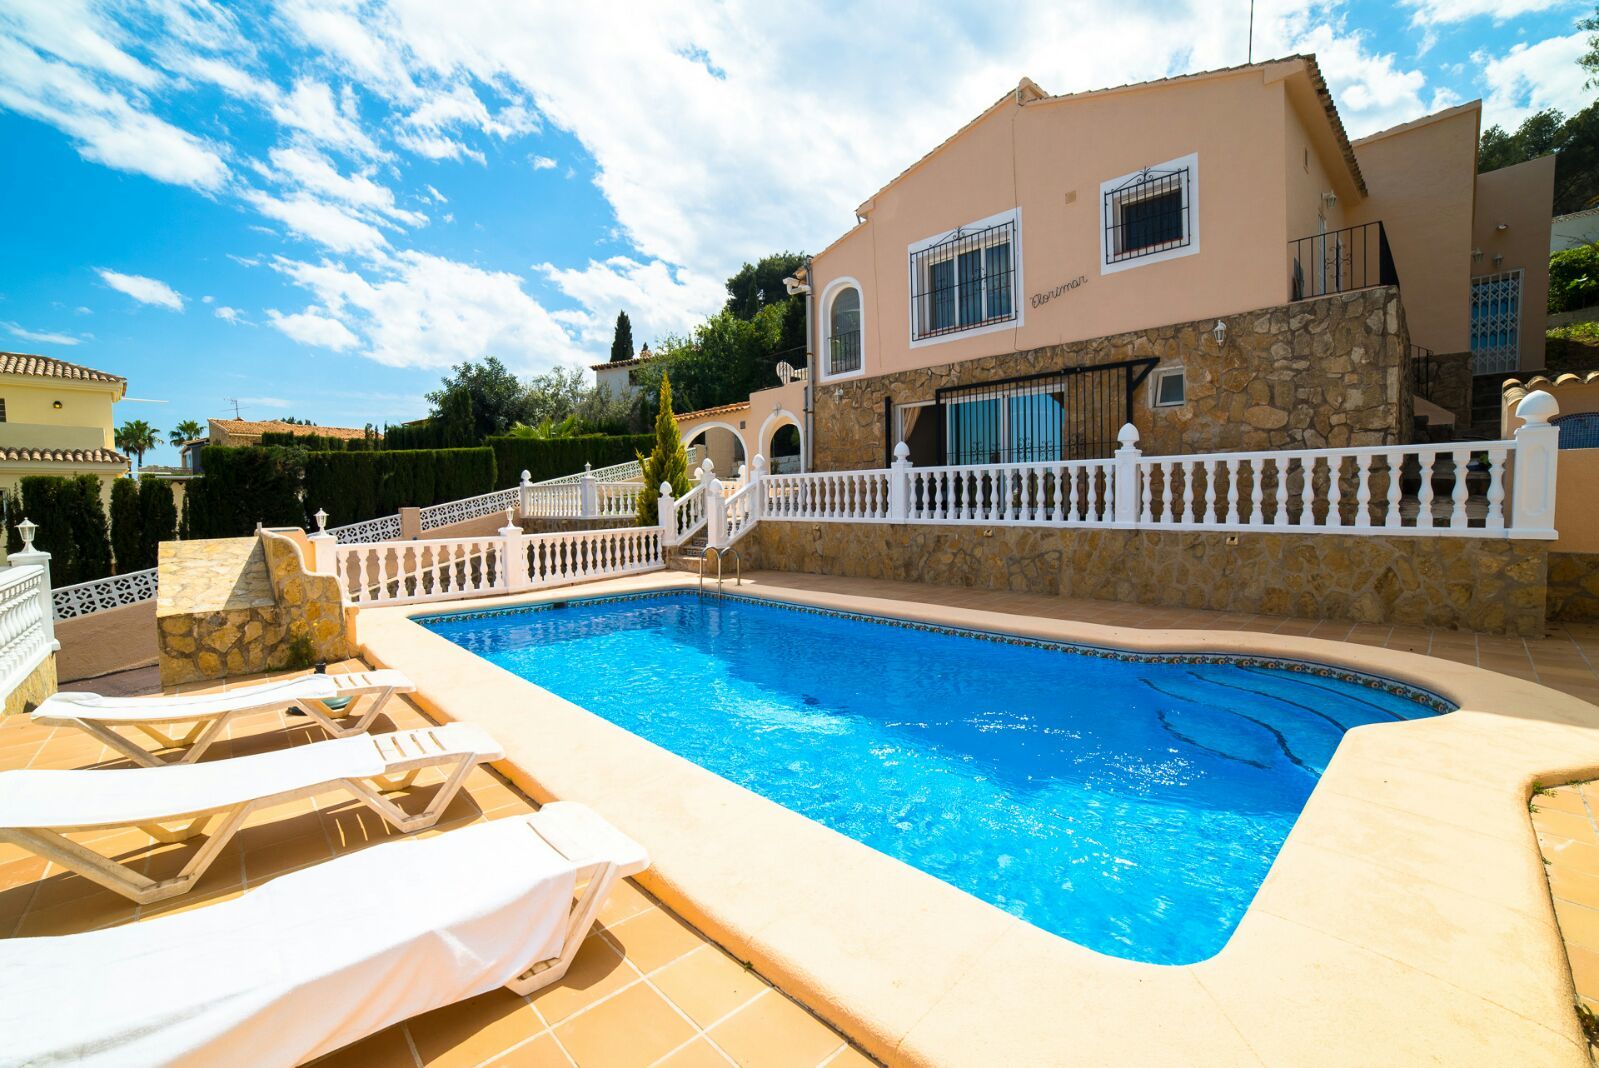 Villa te koop met uitzicht op de zee en het zwembad in de buurt van het dorp.